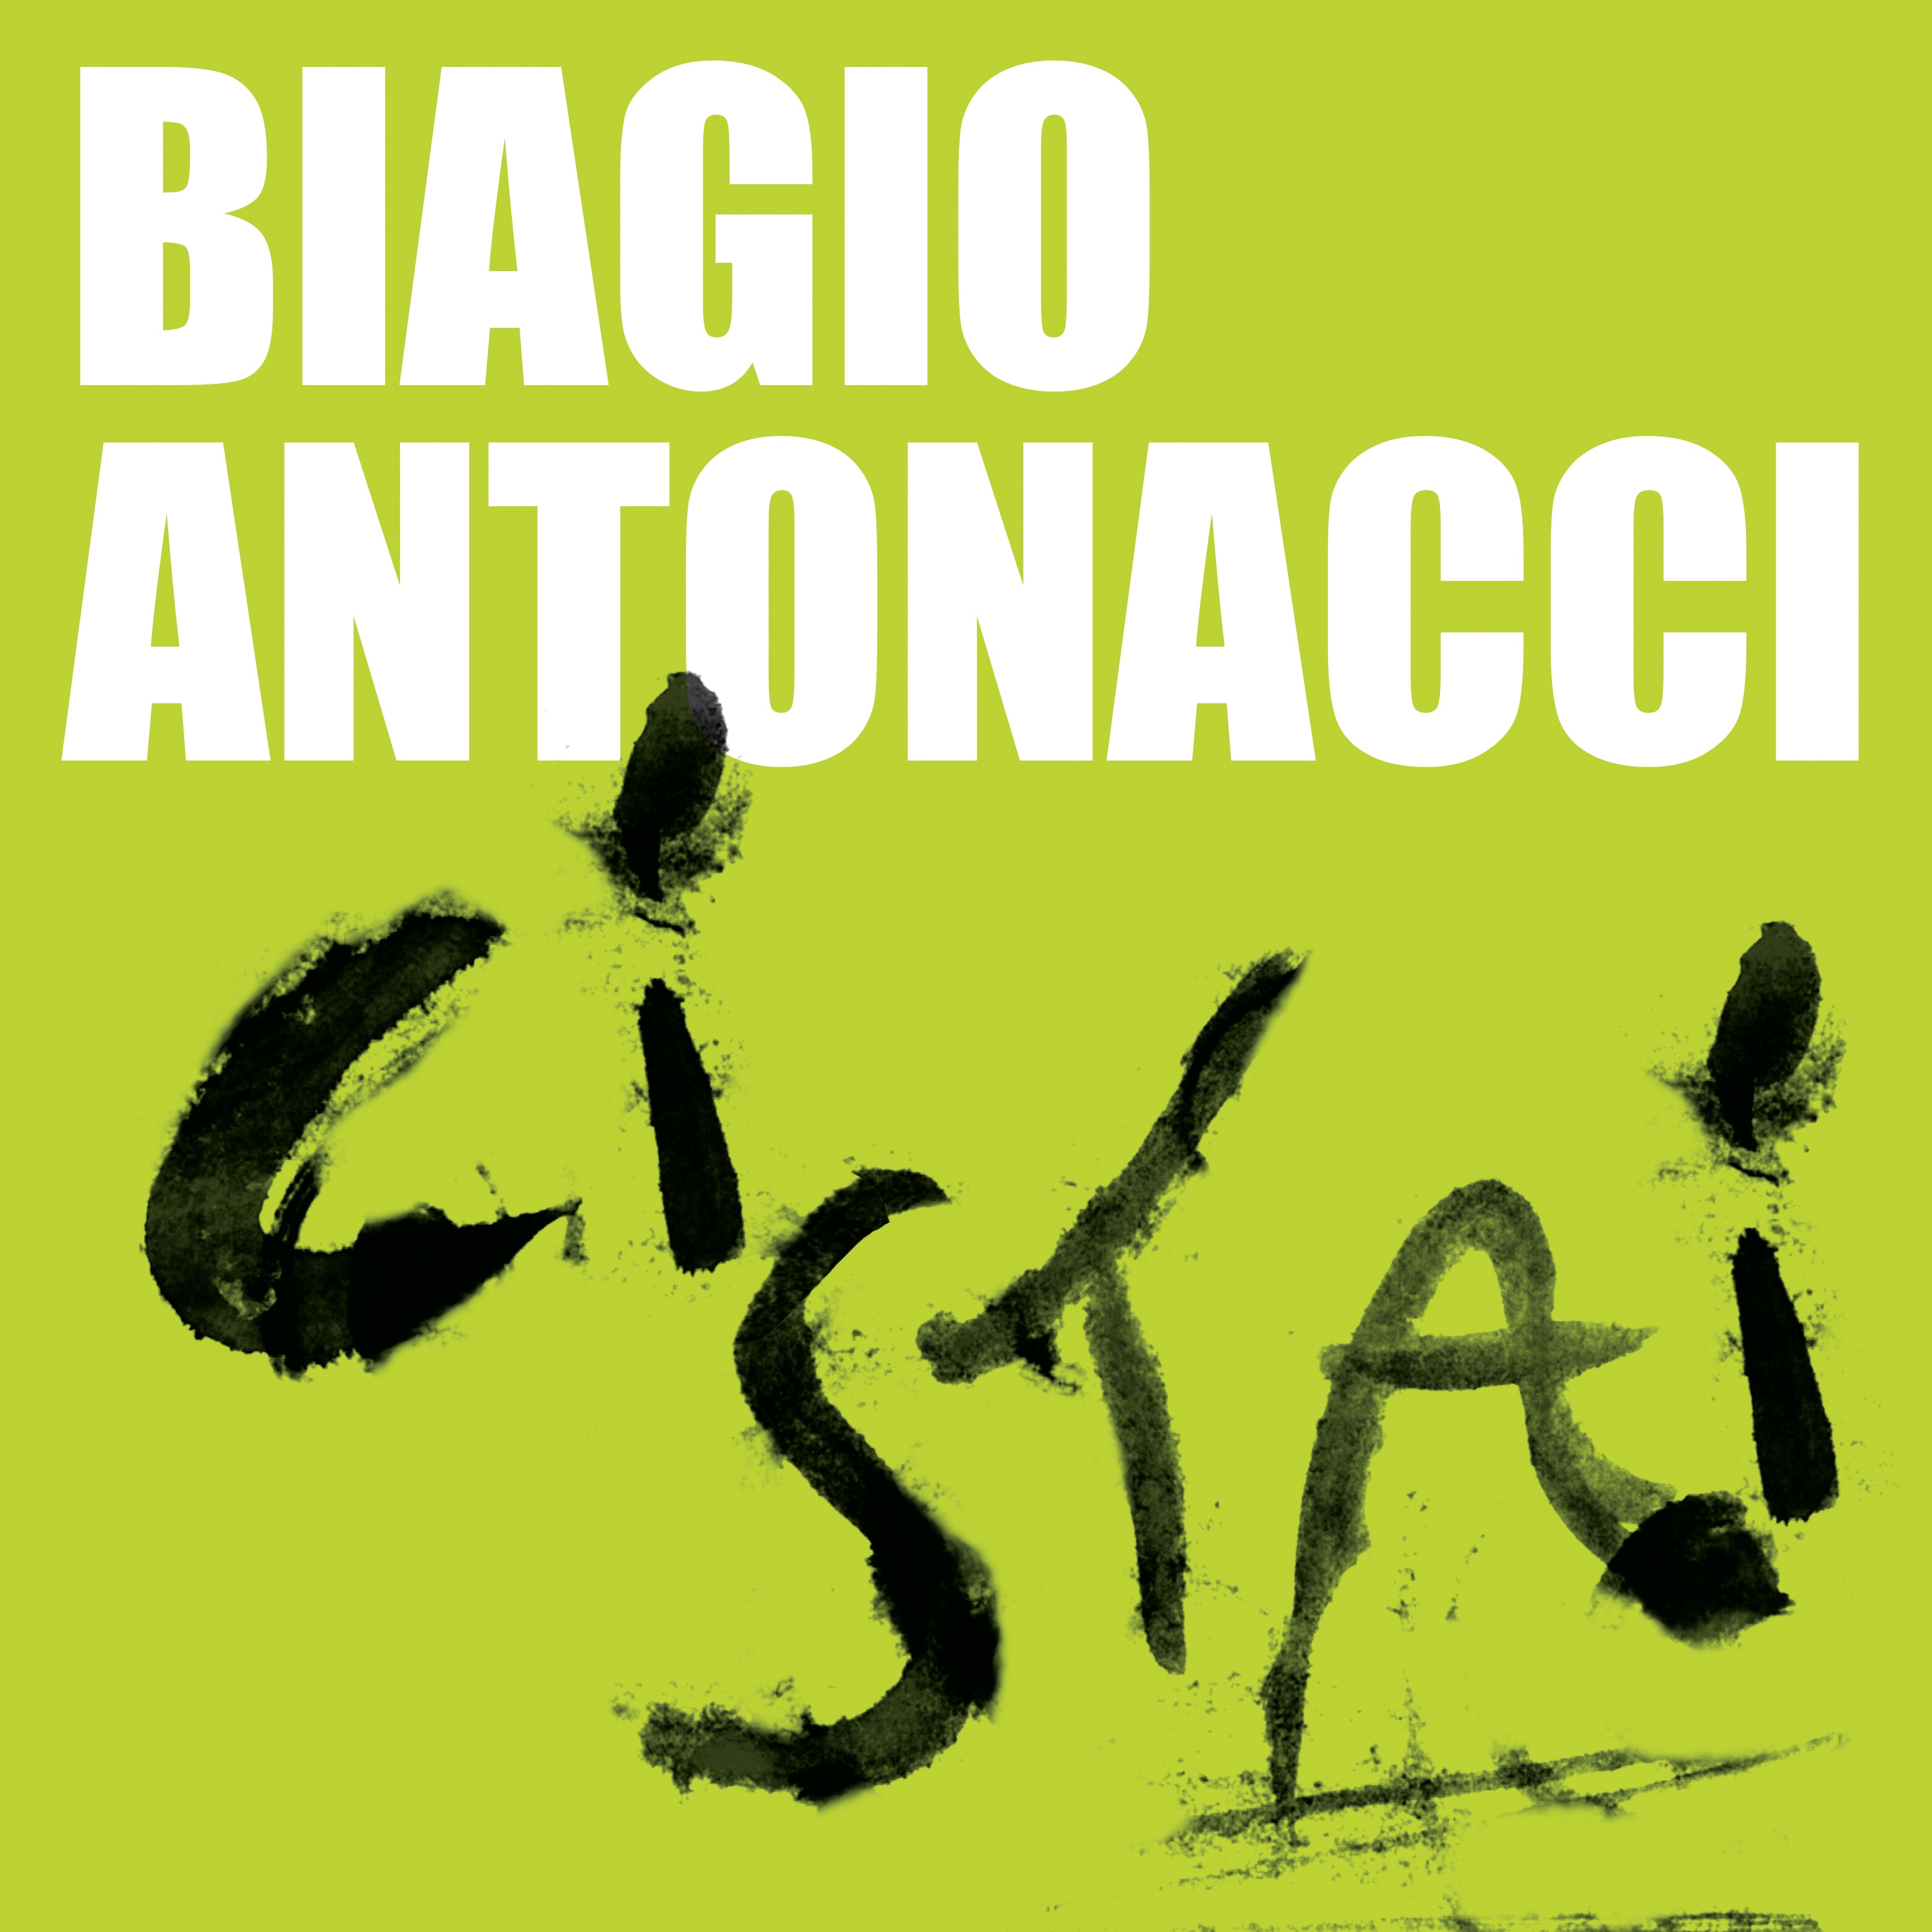  “Ci stai”, il nuovo singolo di Biagio Antonacci in radio e in digitale da venerdì